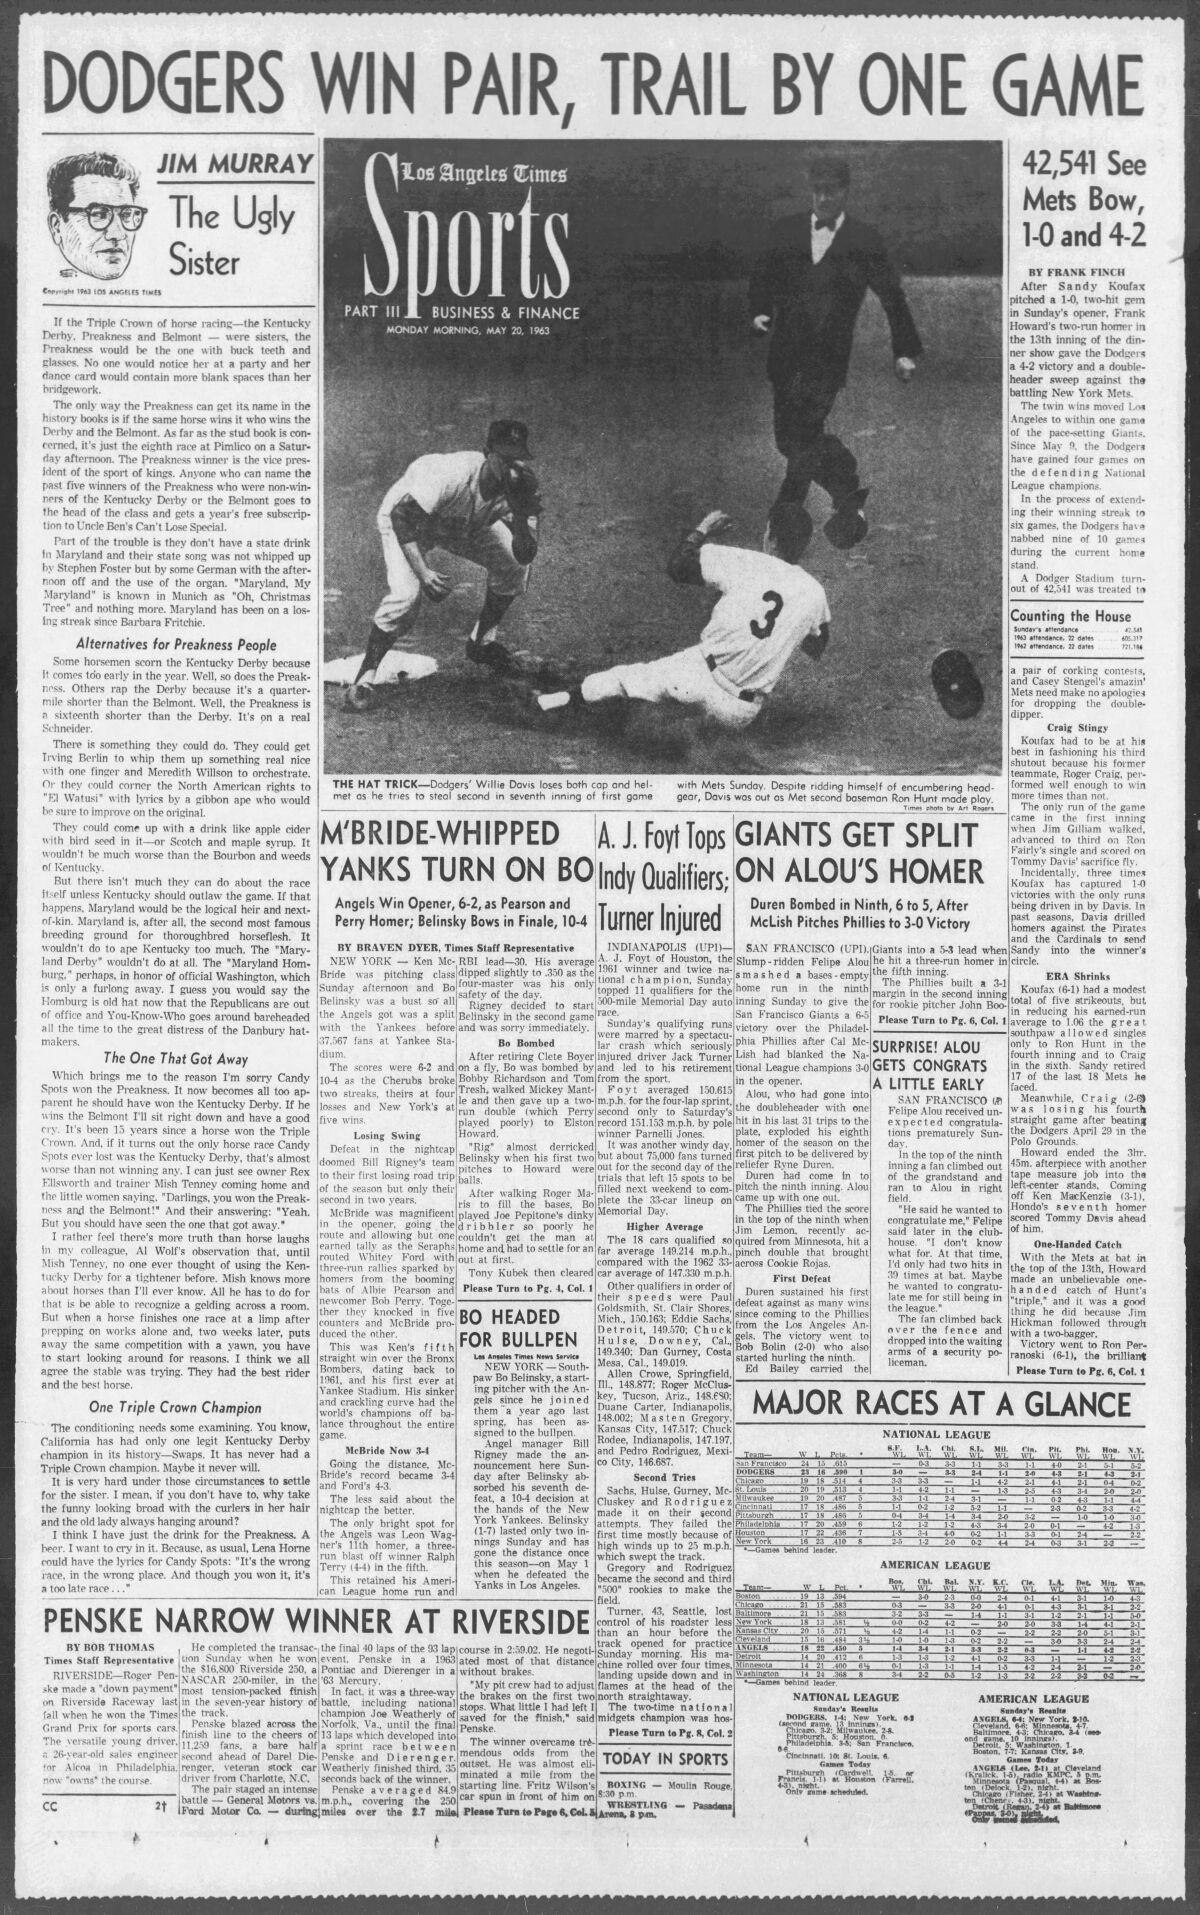 Portada de la sección de deportes de Los Angeles Times el 20 de mayo de 1963.